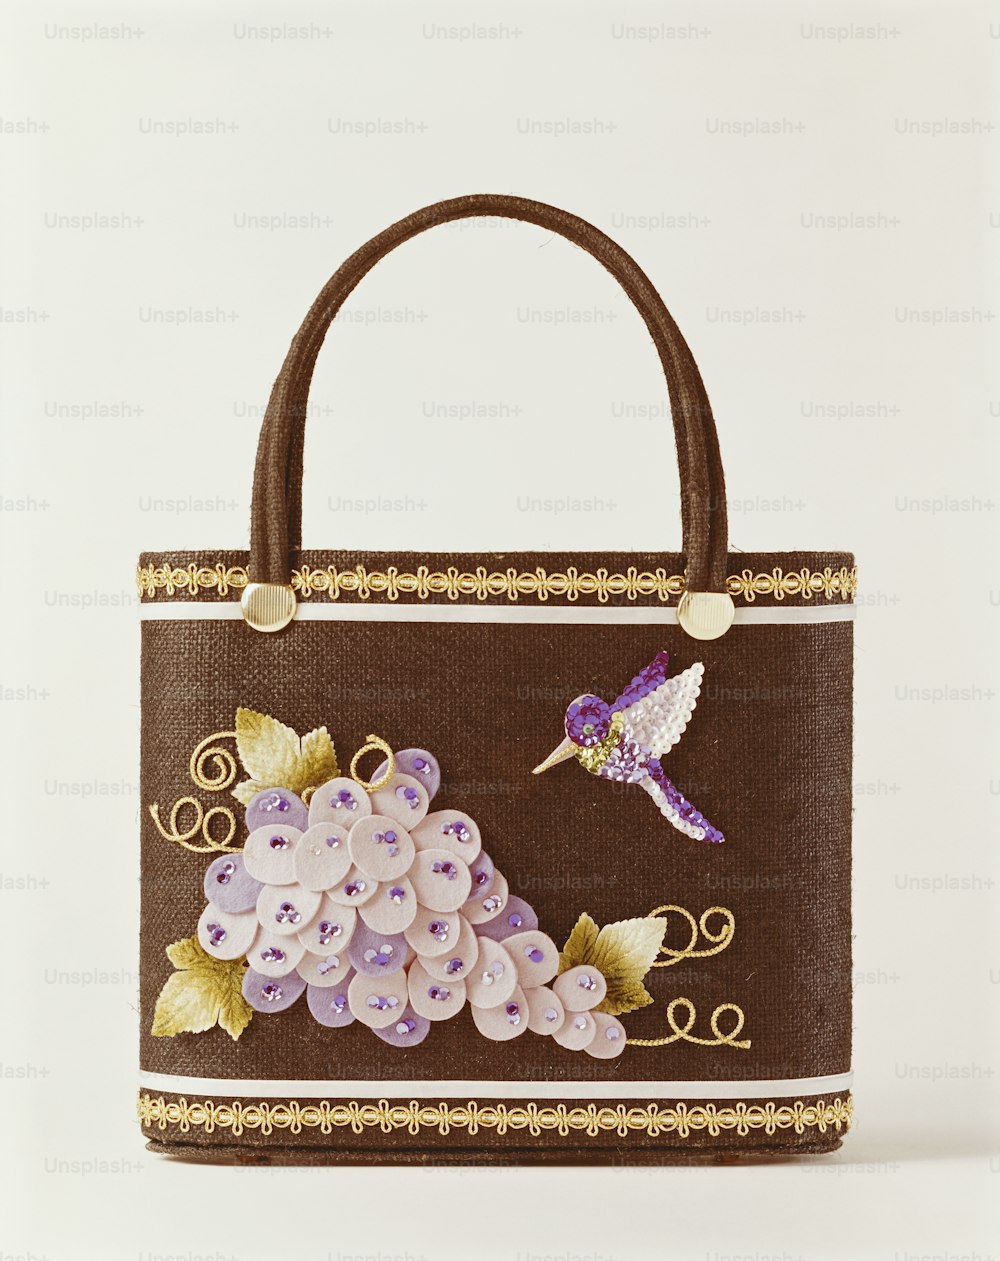 un sac à main brun avec un oiseau et des fleurs dessus